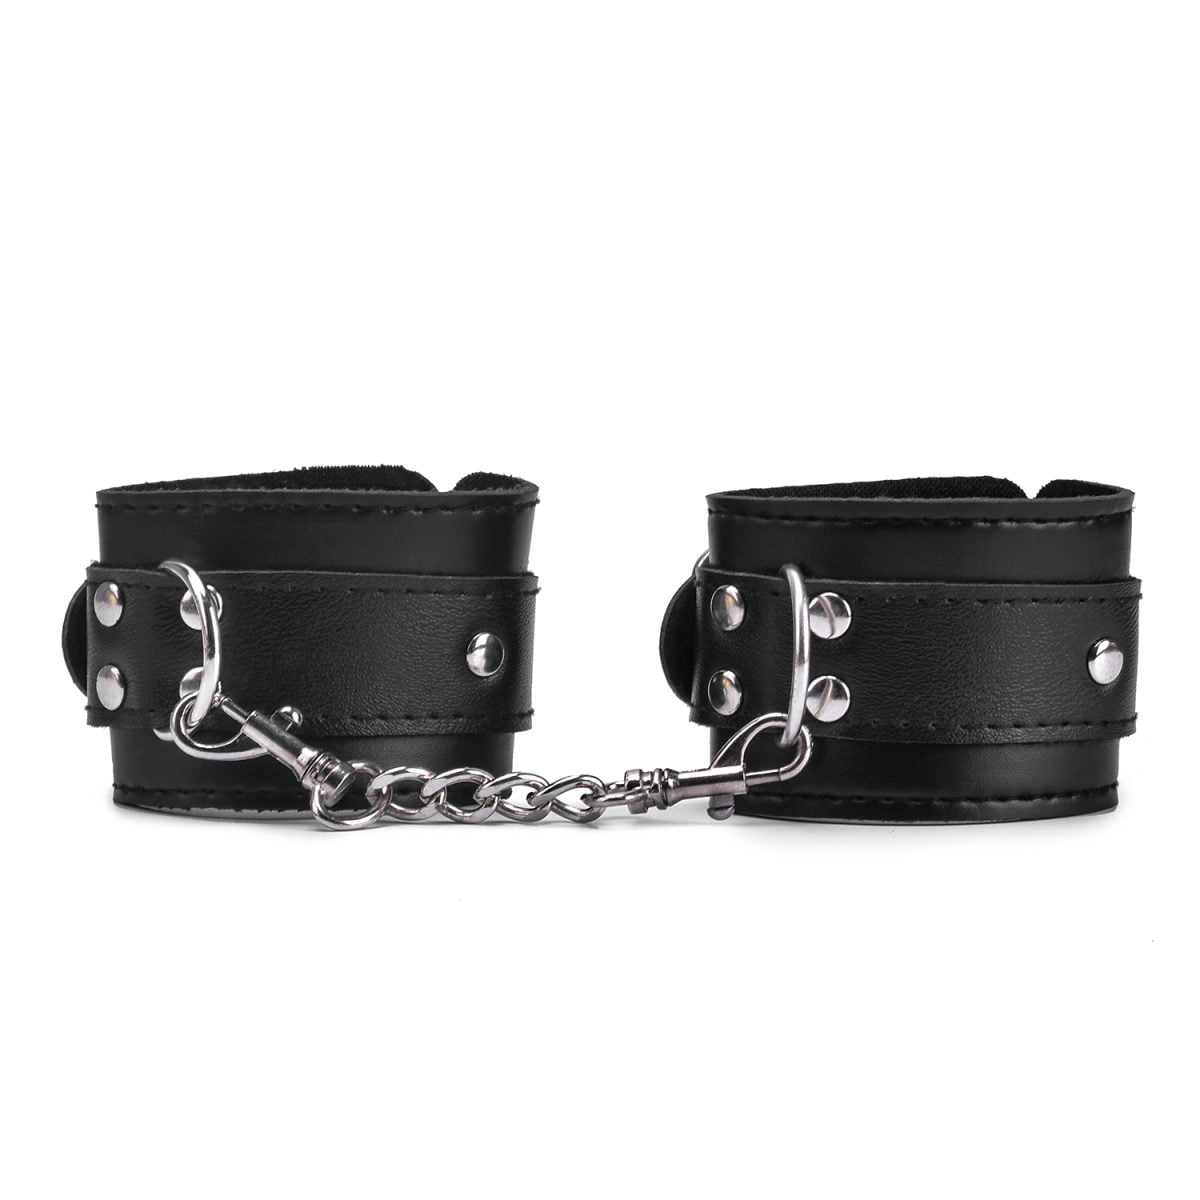 Fine Sport BDSM Sex Bound Leather Handcuffs | Restraints & Handcuffs YDK8010 BDSM Sex Bound Leather Handcuffs 3